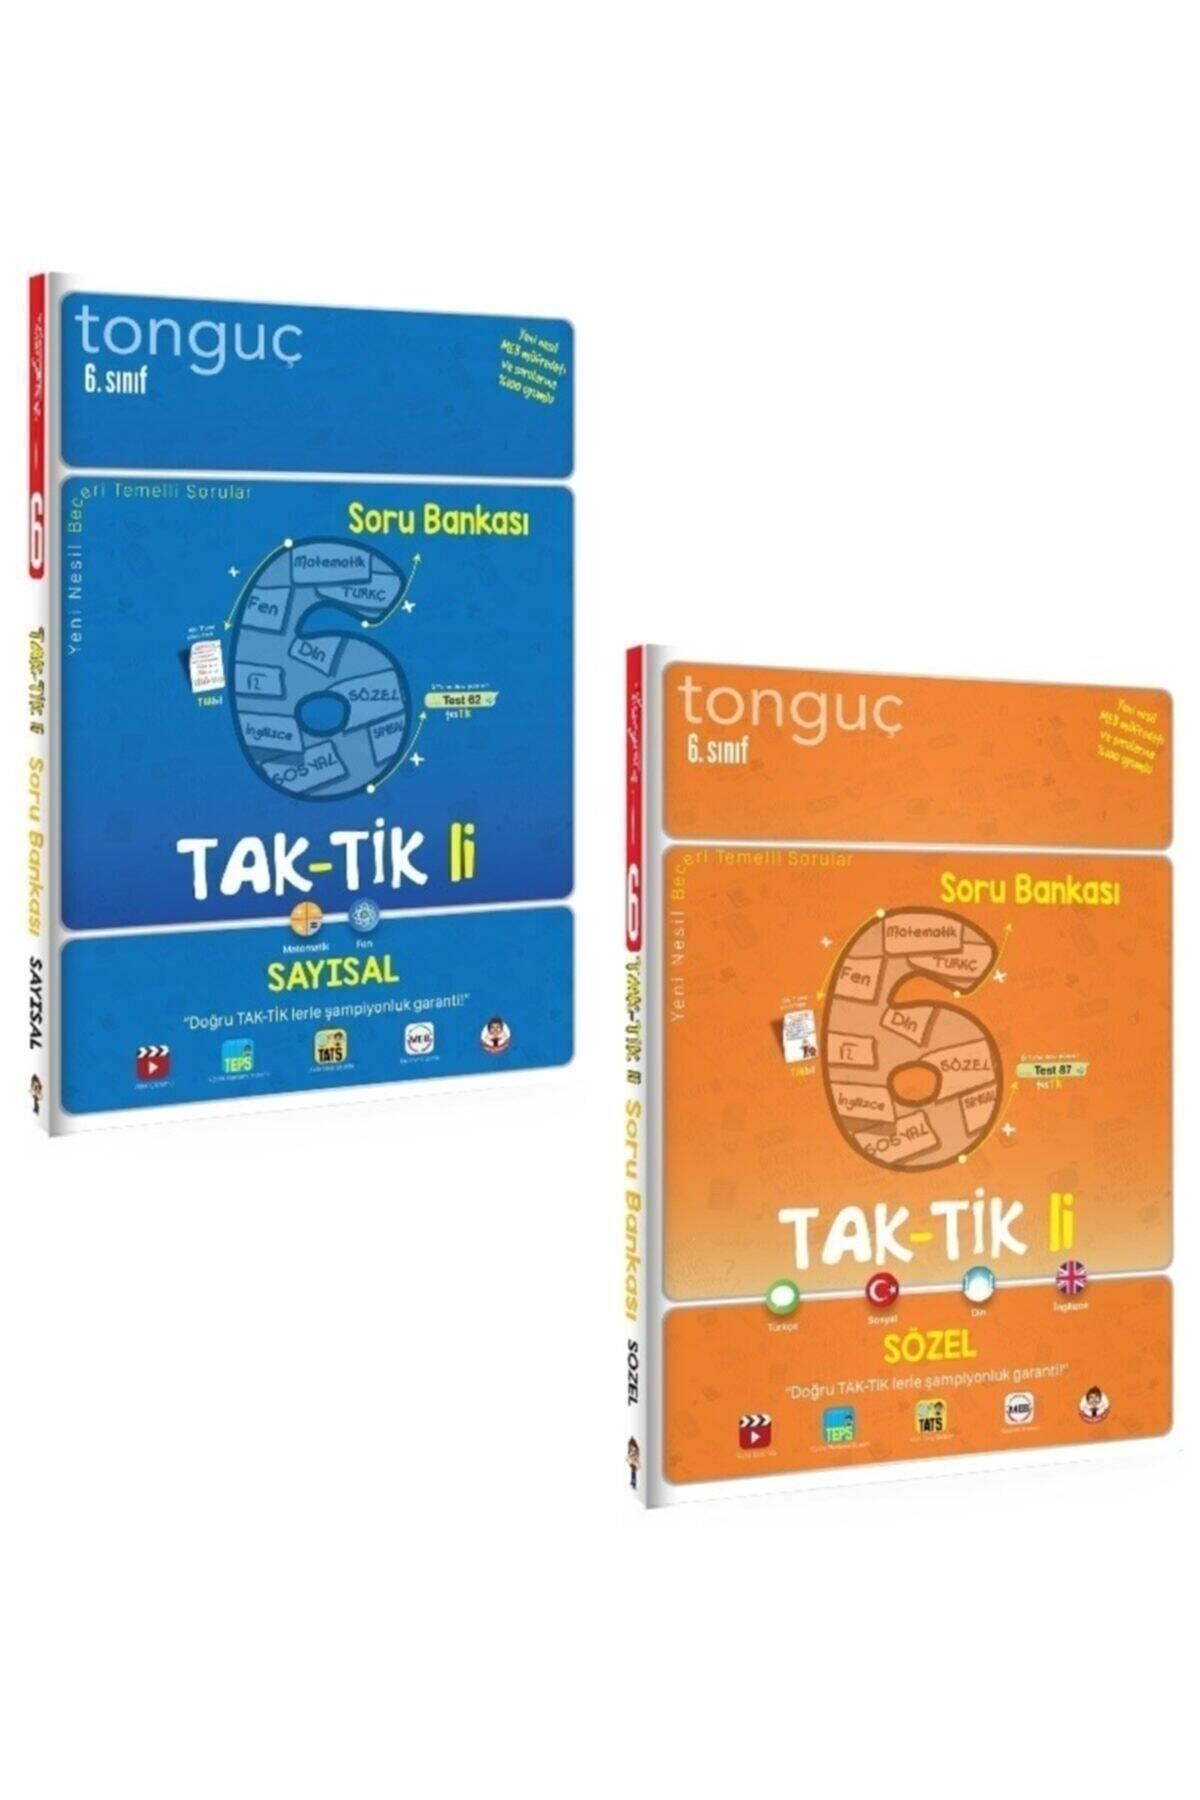 Tonguç Yayınları 6. Sınıf Taktikli Sayısal ve Sözel Soru Bankası